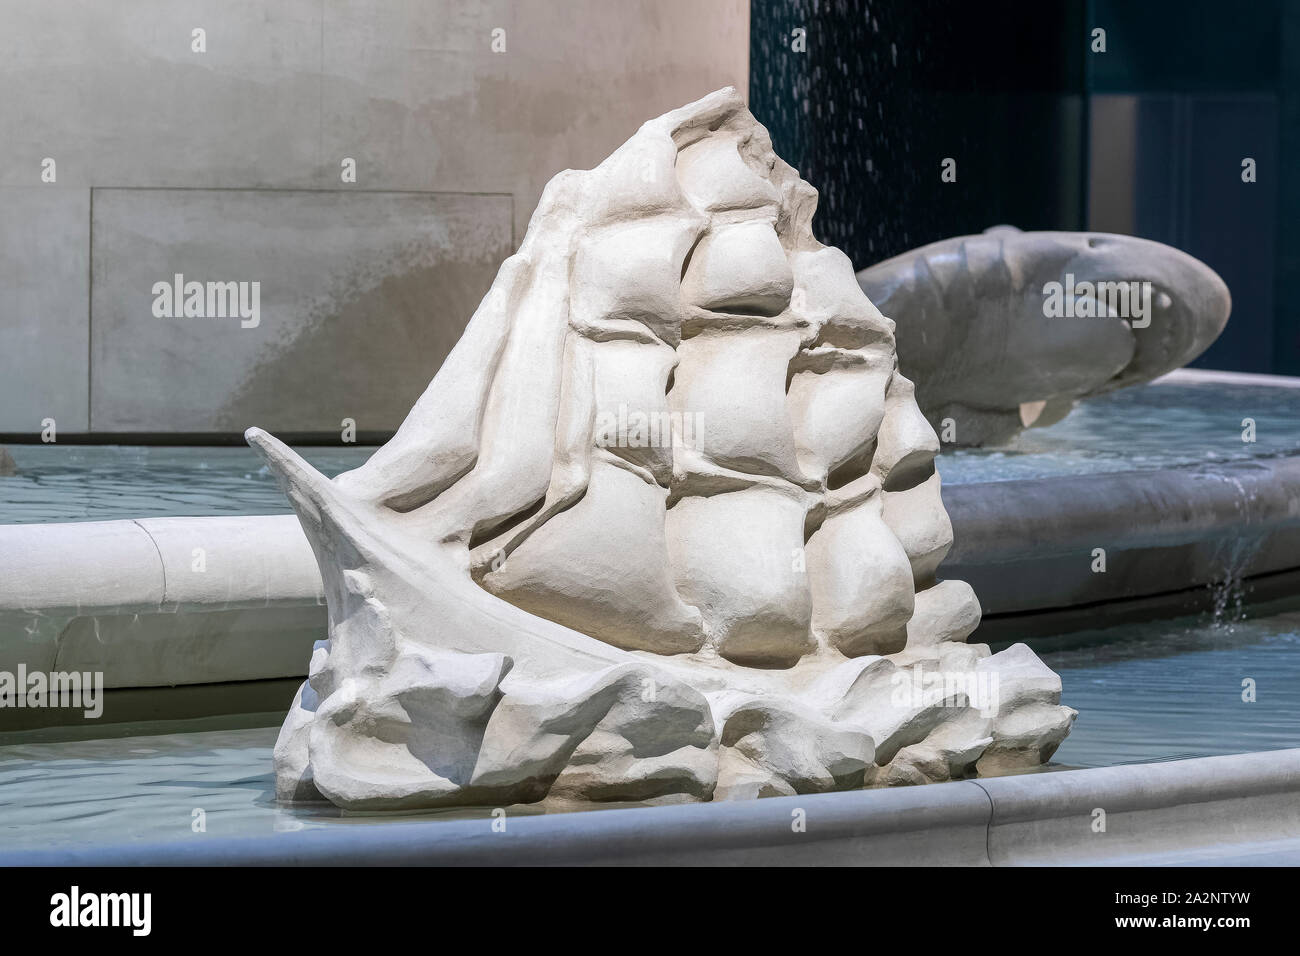 Schiff Skulptur Teil der amerikanischen Scultpress des Fons Americanus Skulptur in der Tate Modern in London. Stockfoto